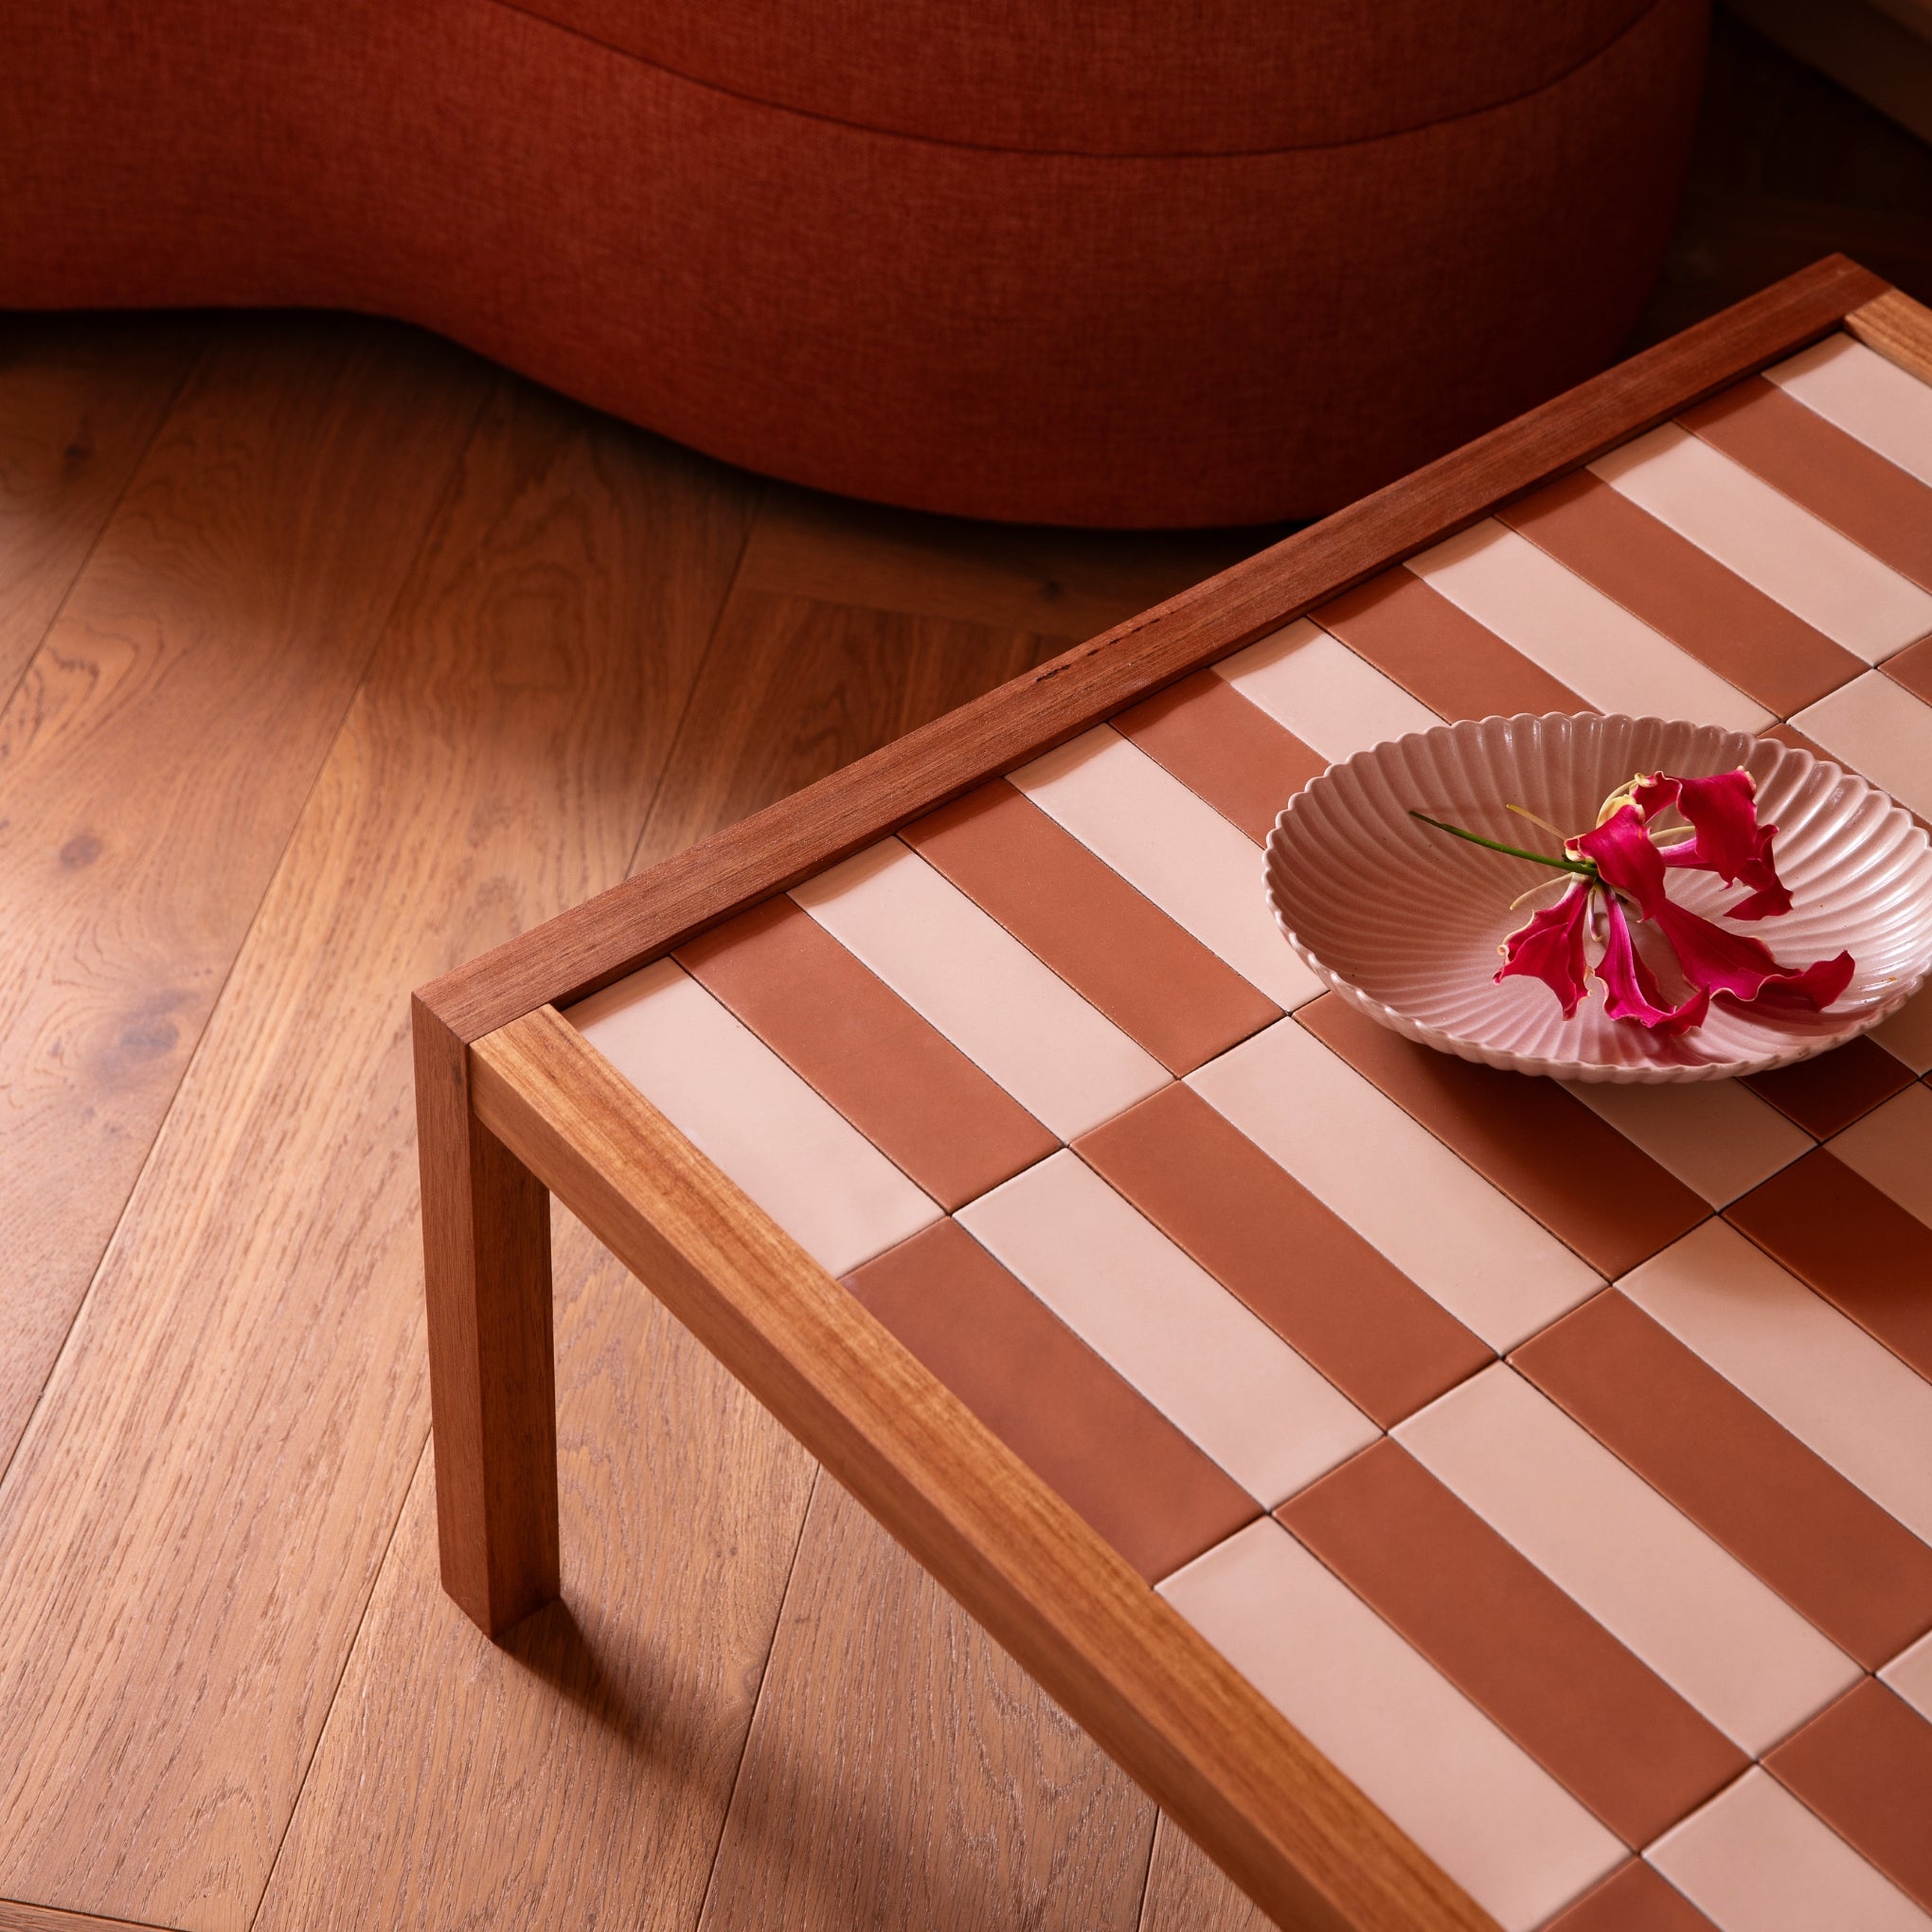 Tiled Side Table Blush Terracotta